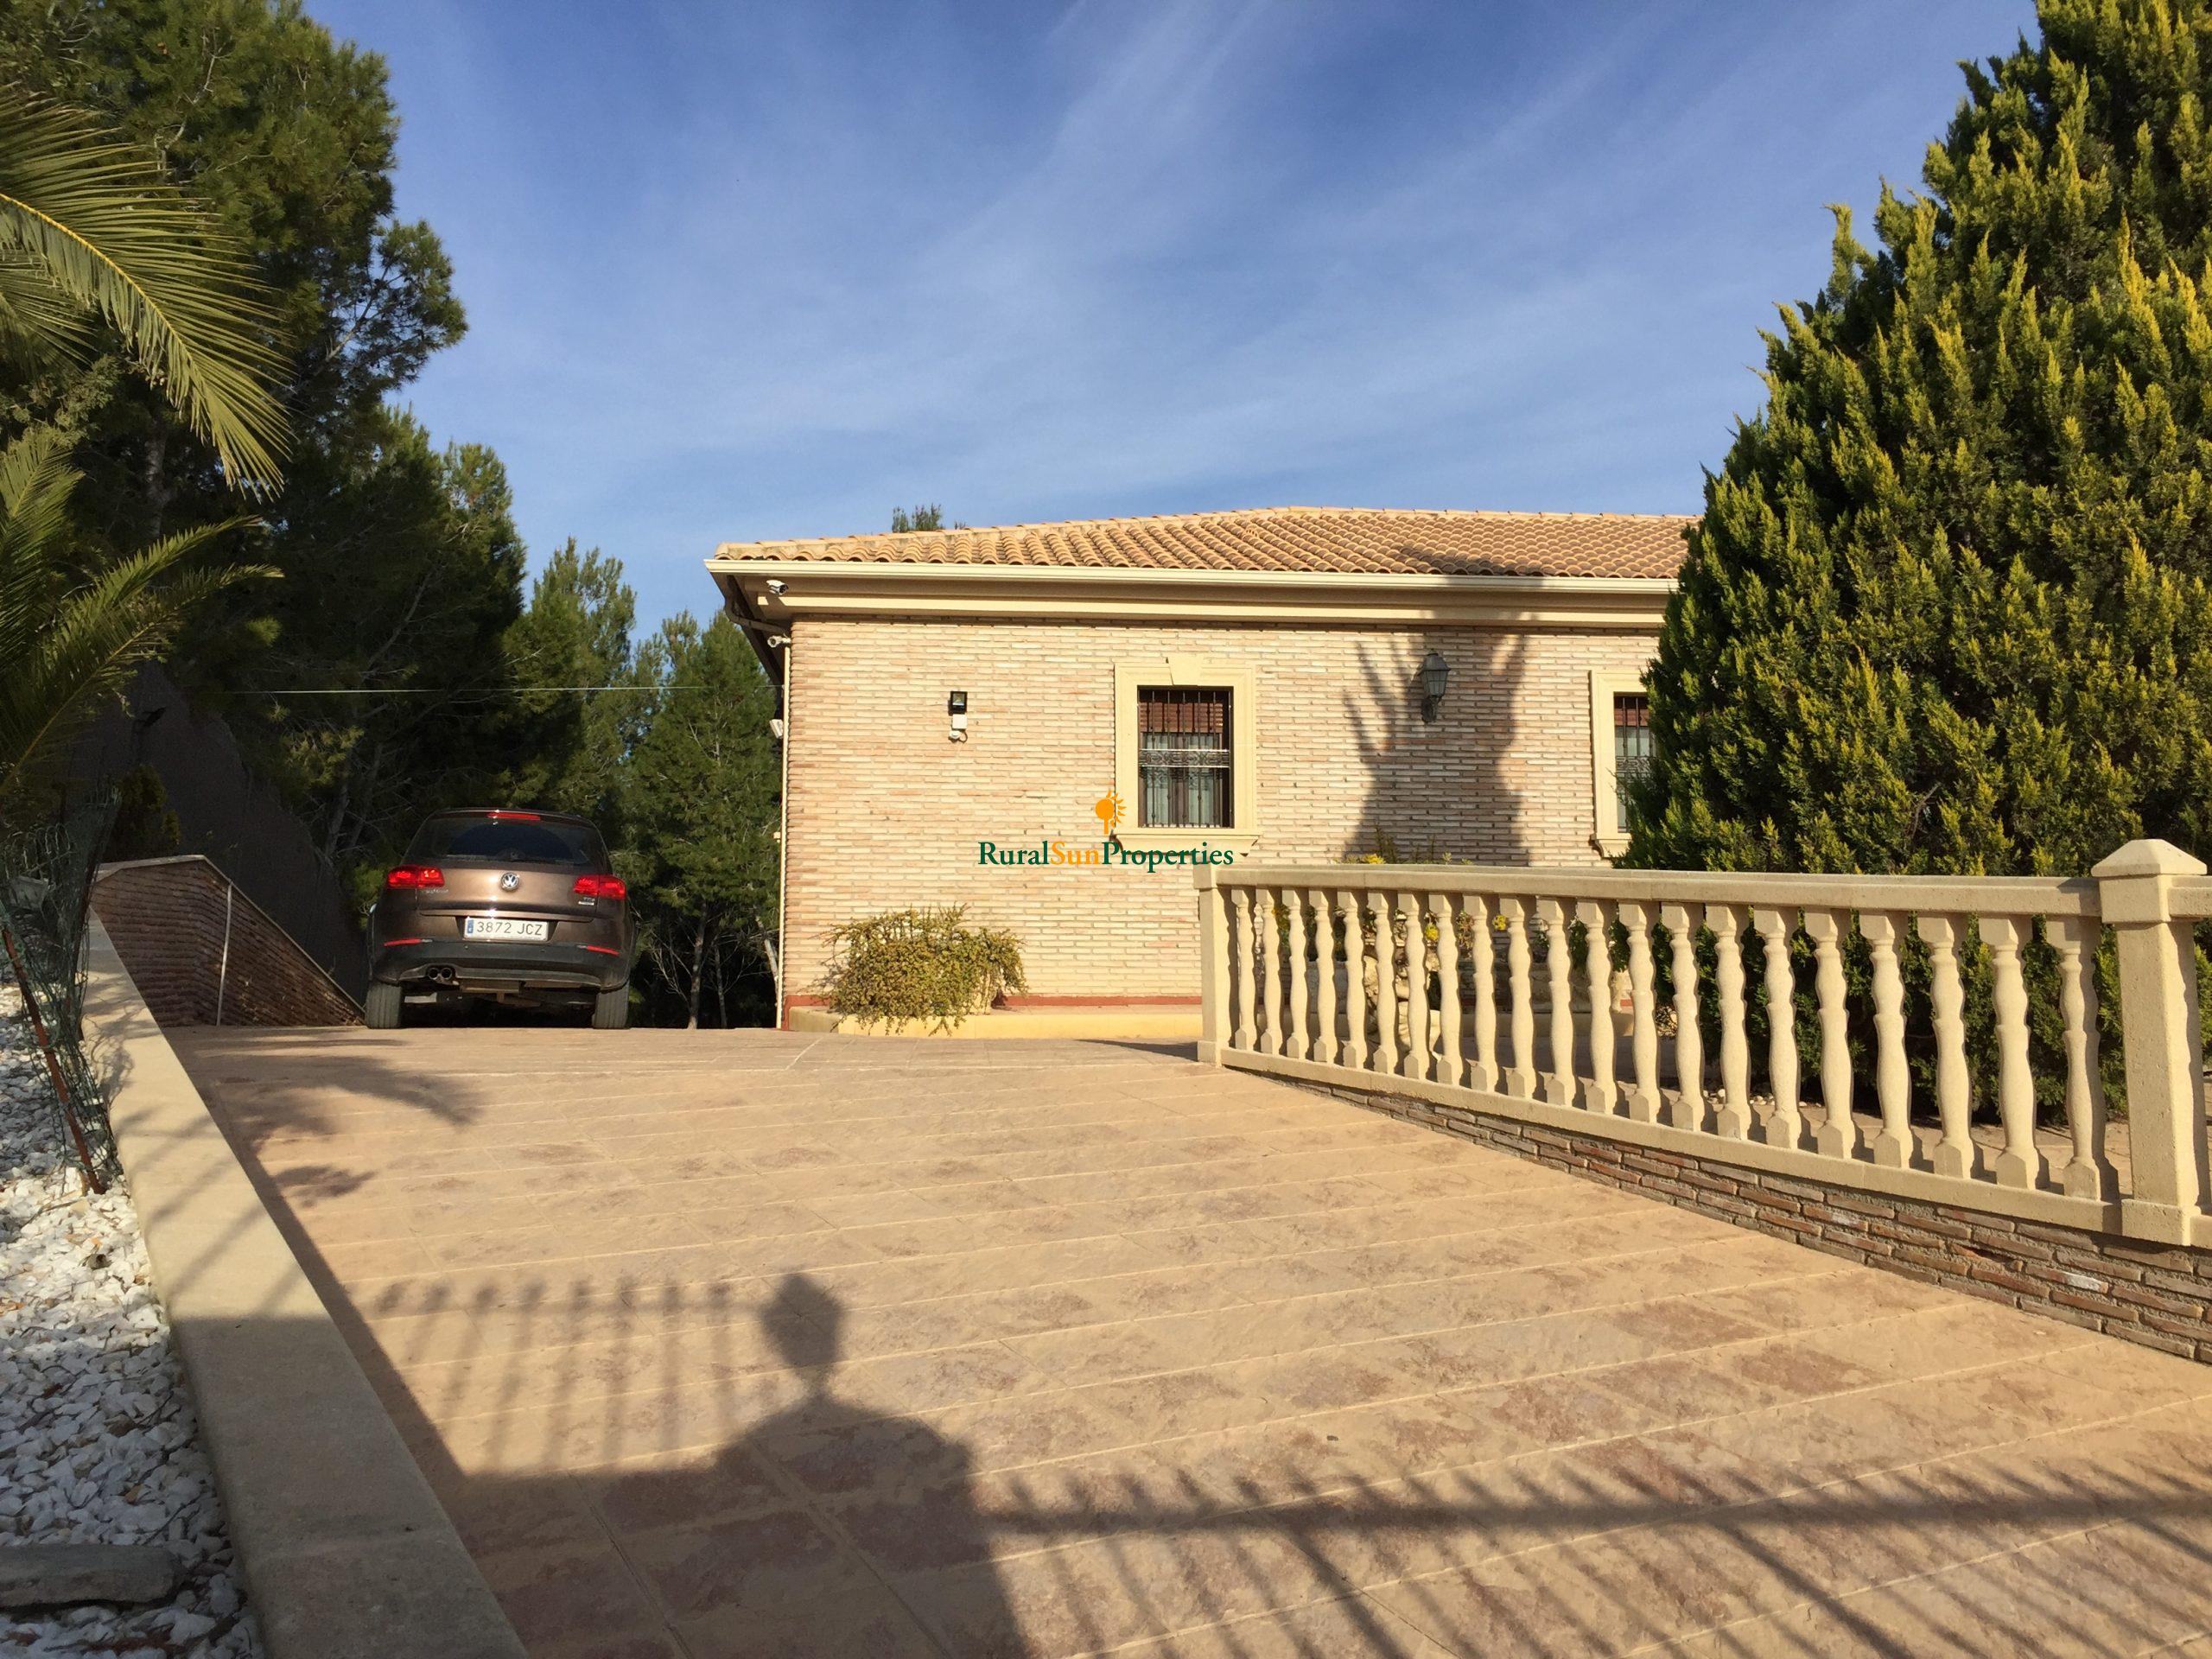 Sale exclusive villa in Molina de Segura. Murcia Inland.